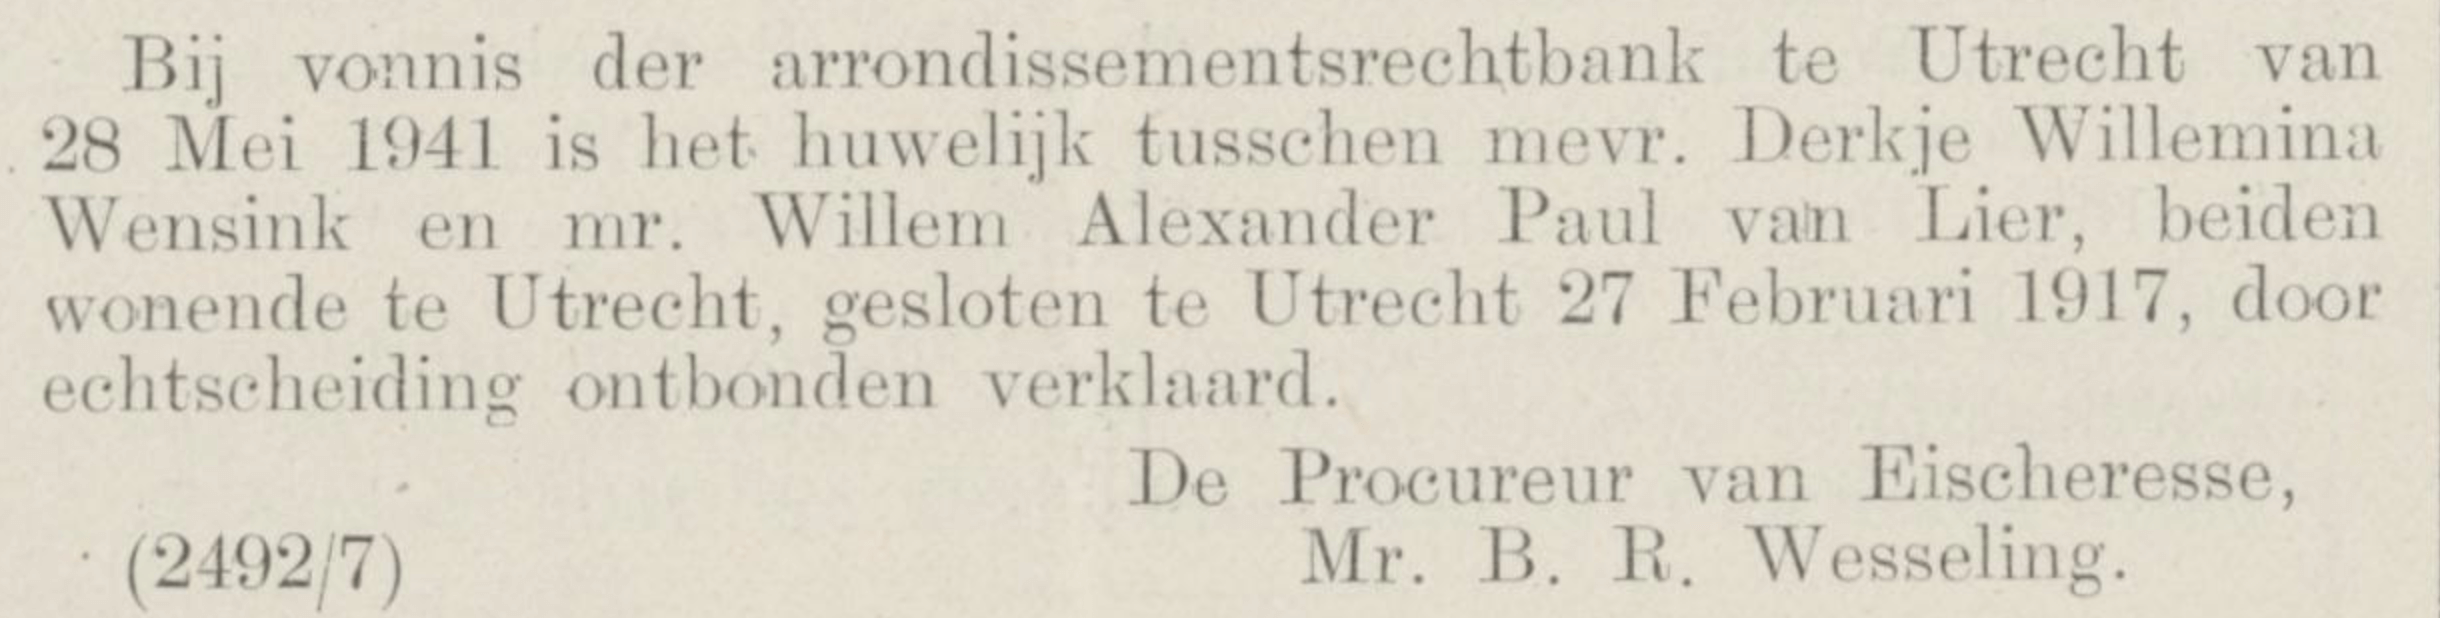 Publicatie in de Staatscourant, 1941.